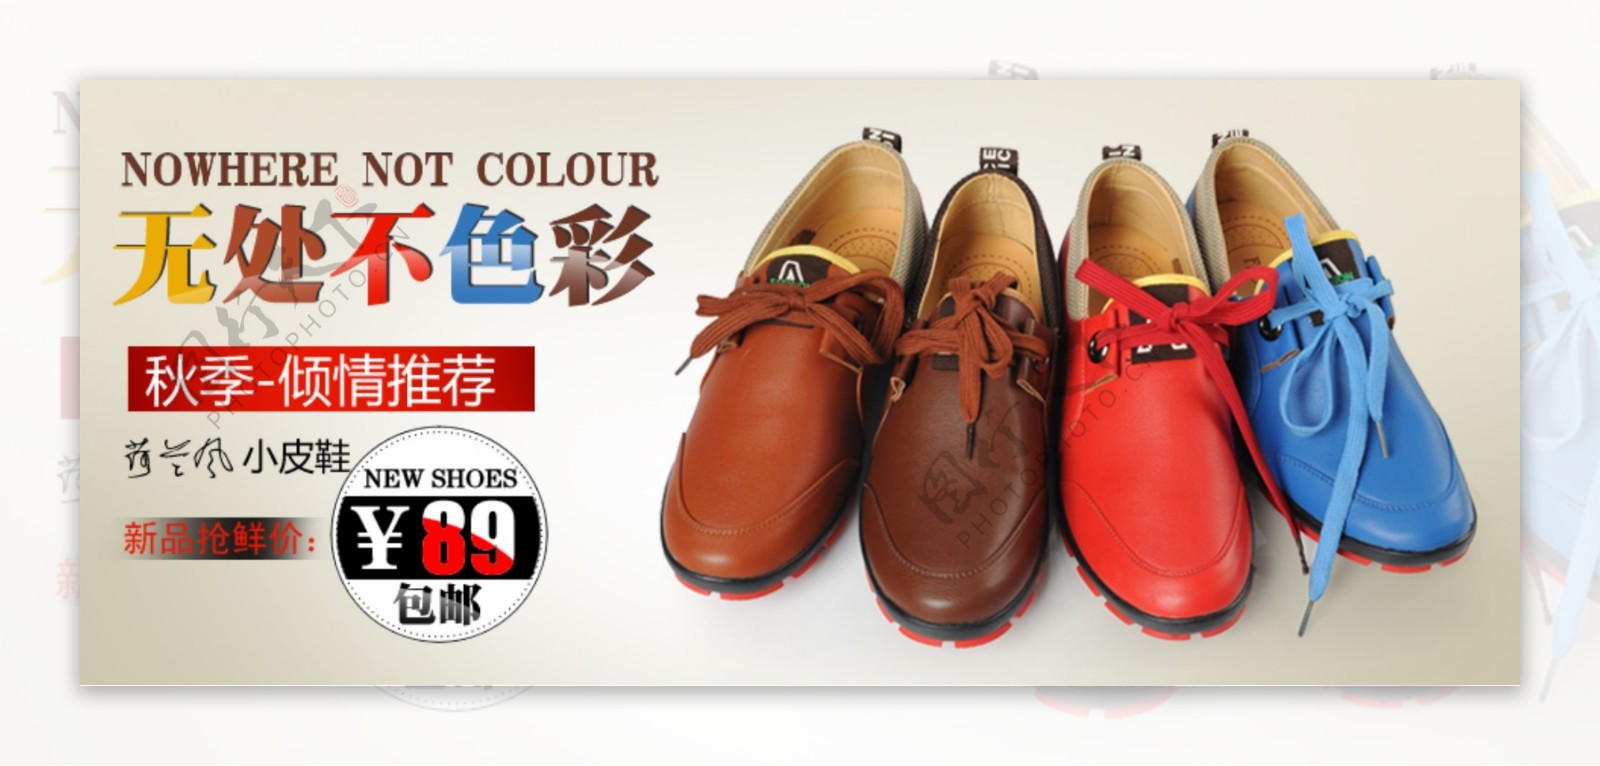 彩色鞋子促销海报图片